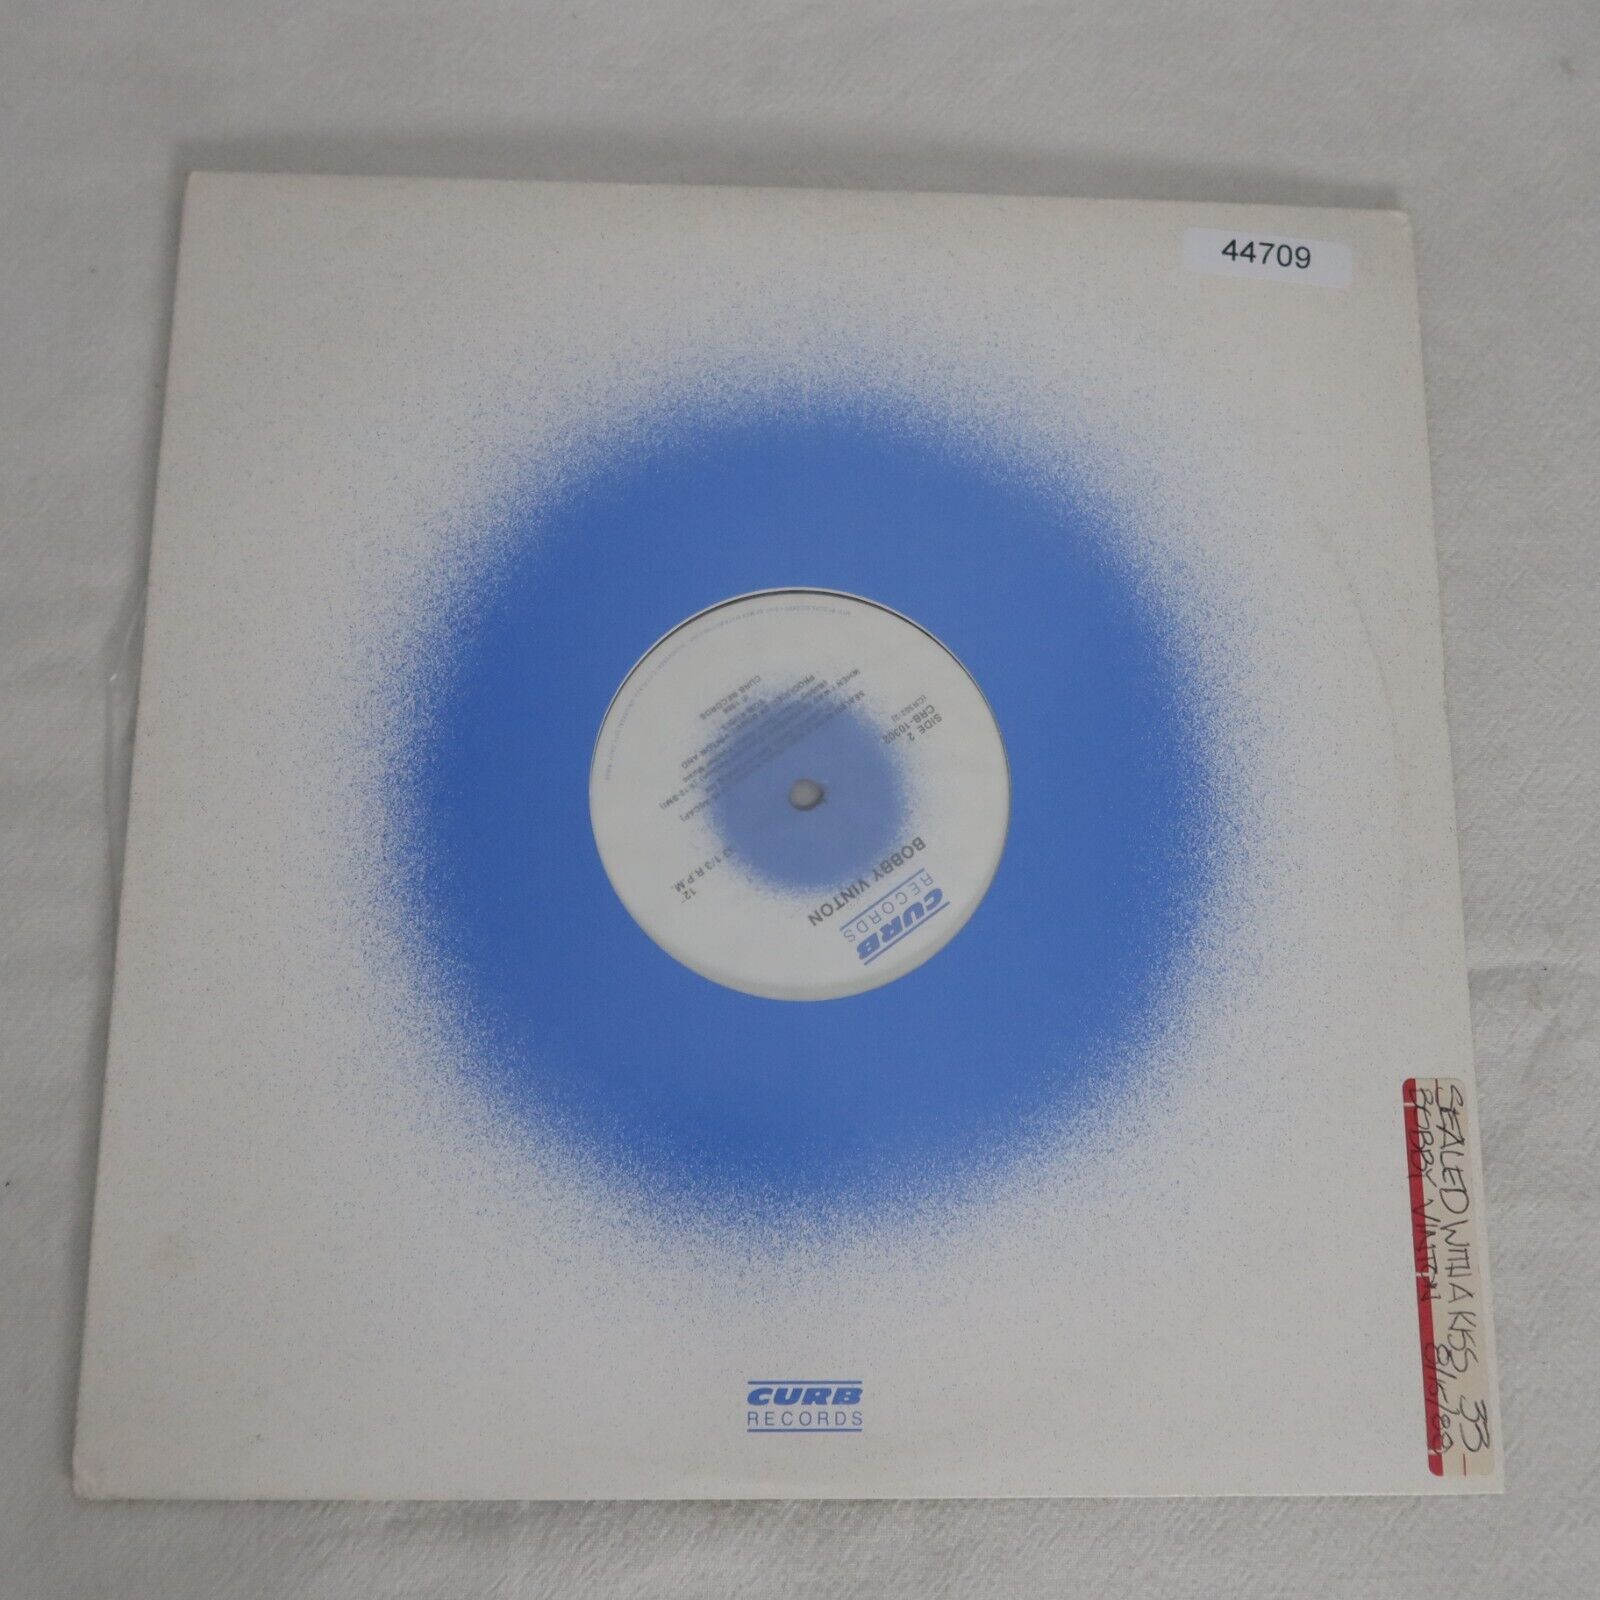 Bobby Vinton Sealed With A Kiss PROMO SINGLE Vinyl Record Album